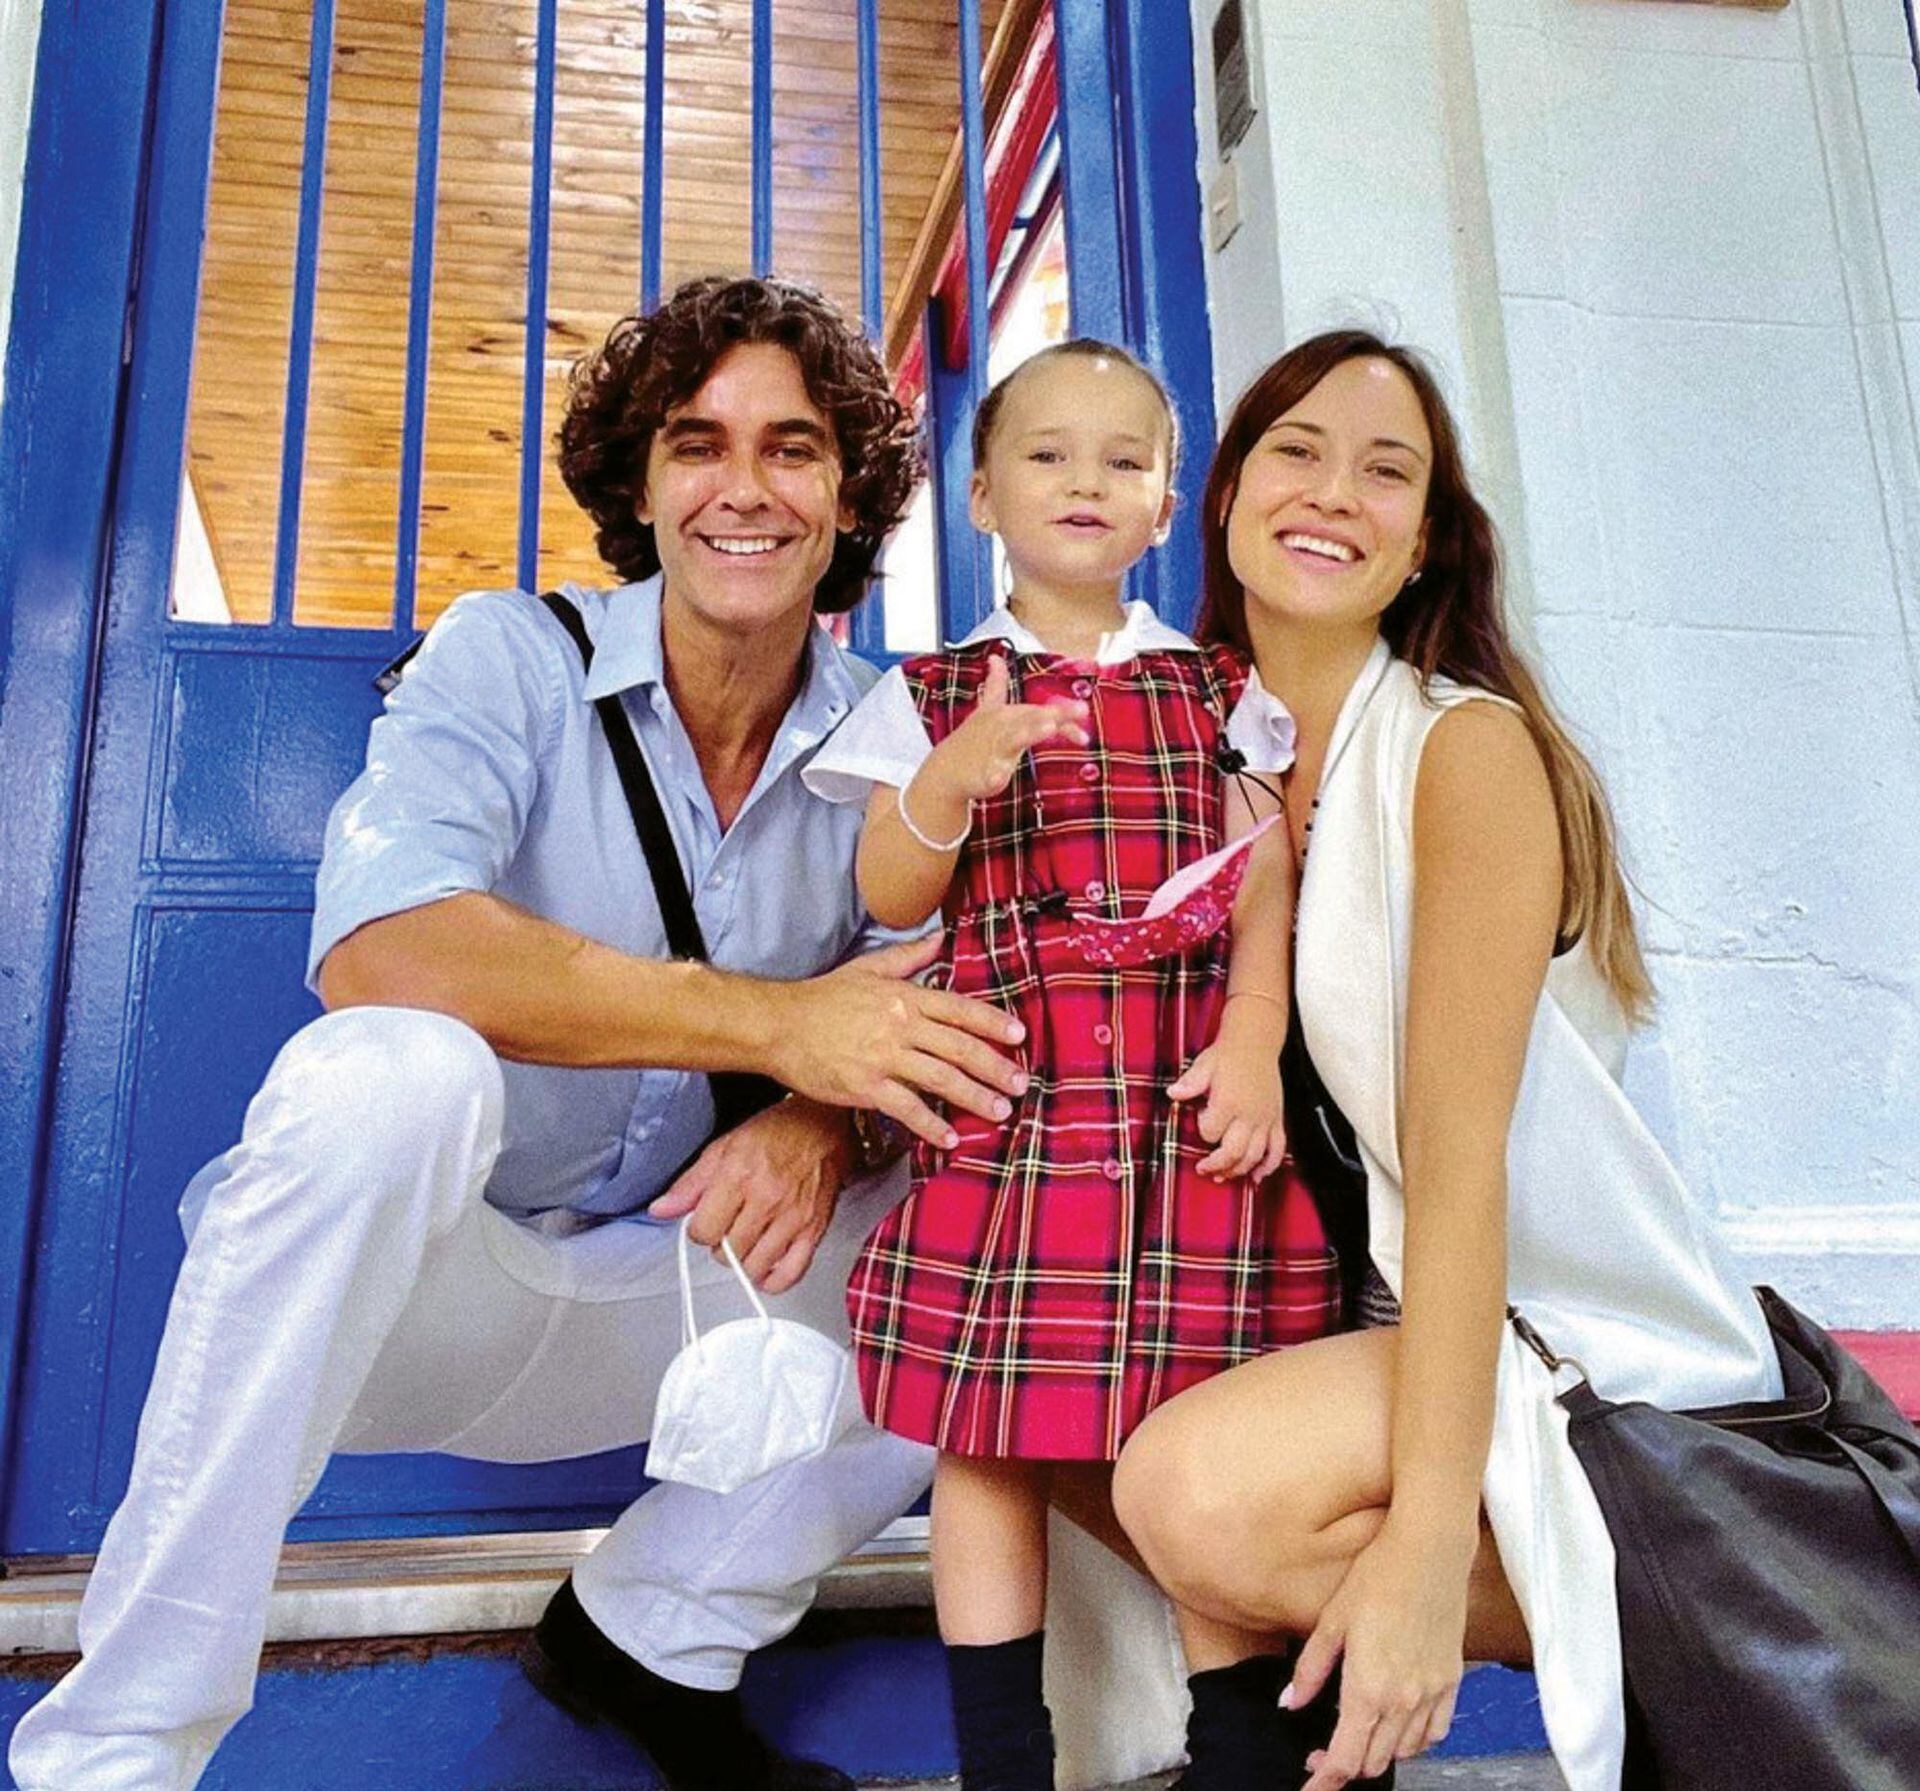 Mariano Martínez, Camila Cavallo y Alma, la hija de ambos. La pareja se separó hace más de un año, pero mantiene un muy buen vínculo